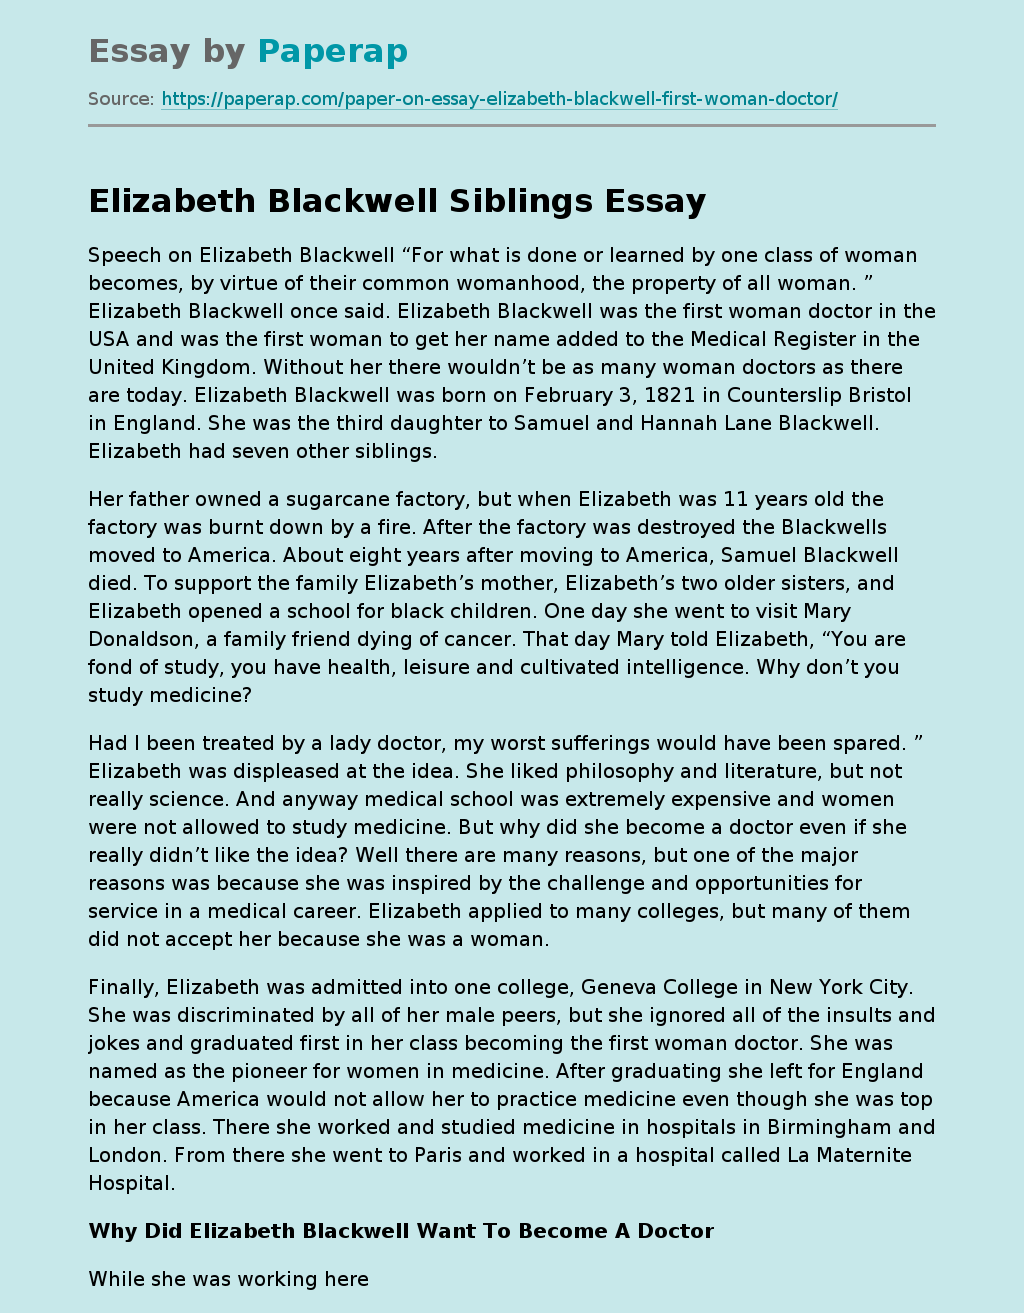 Elizabeth Blackwell Siblings